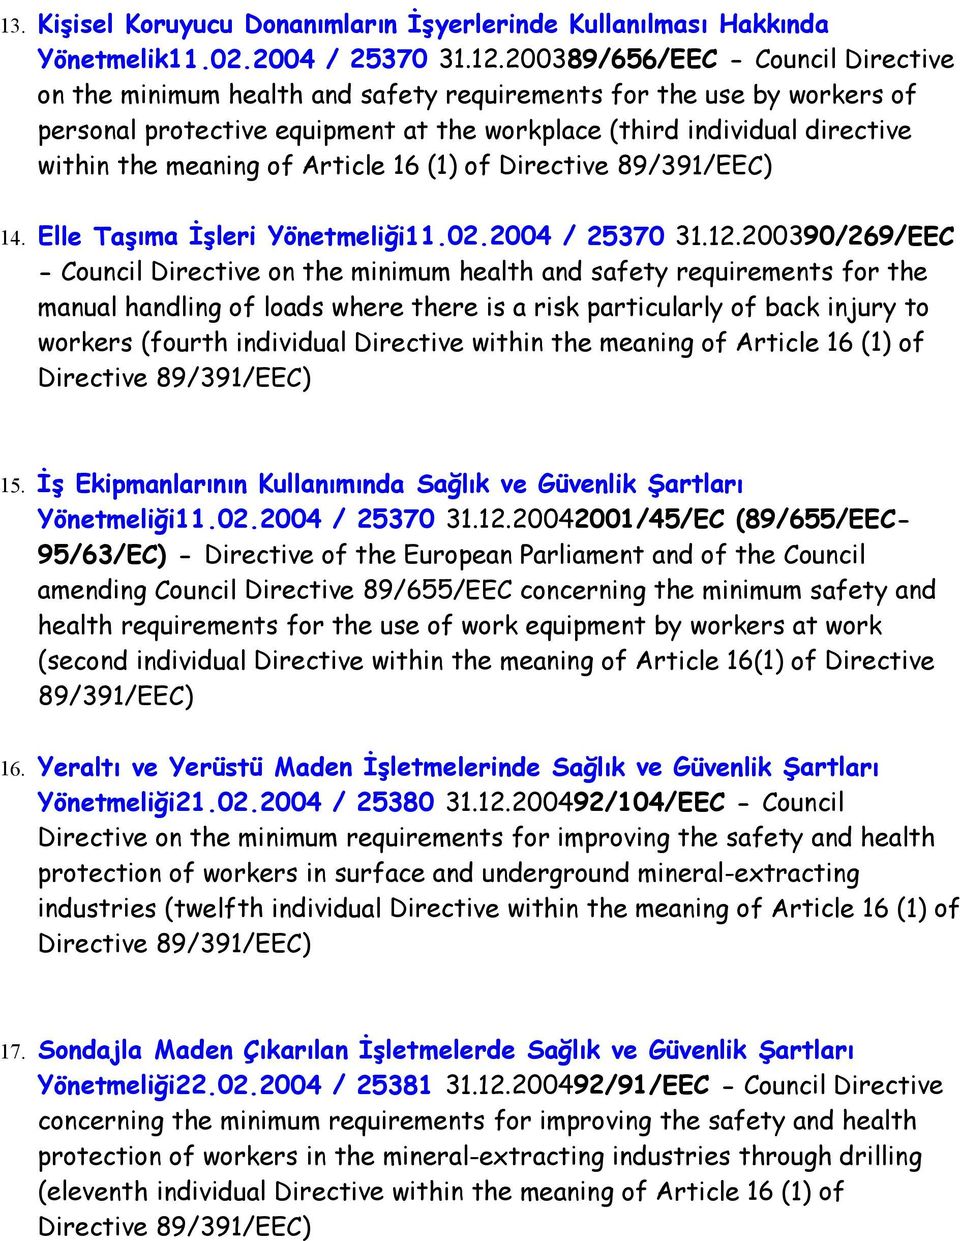 meaning of Article 16 (1) of 14. Elle Taşıma İşleri Yönetmeliği11.02.2004 / 25370 31.12.